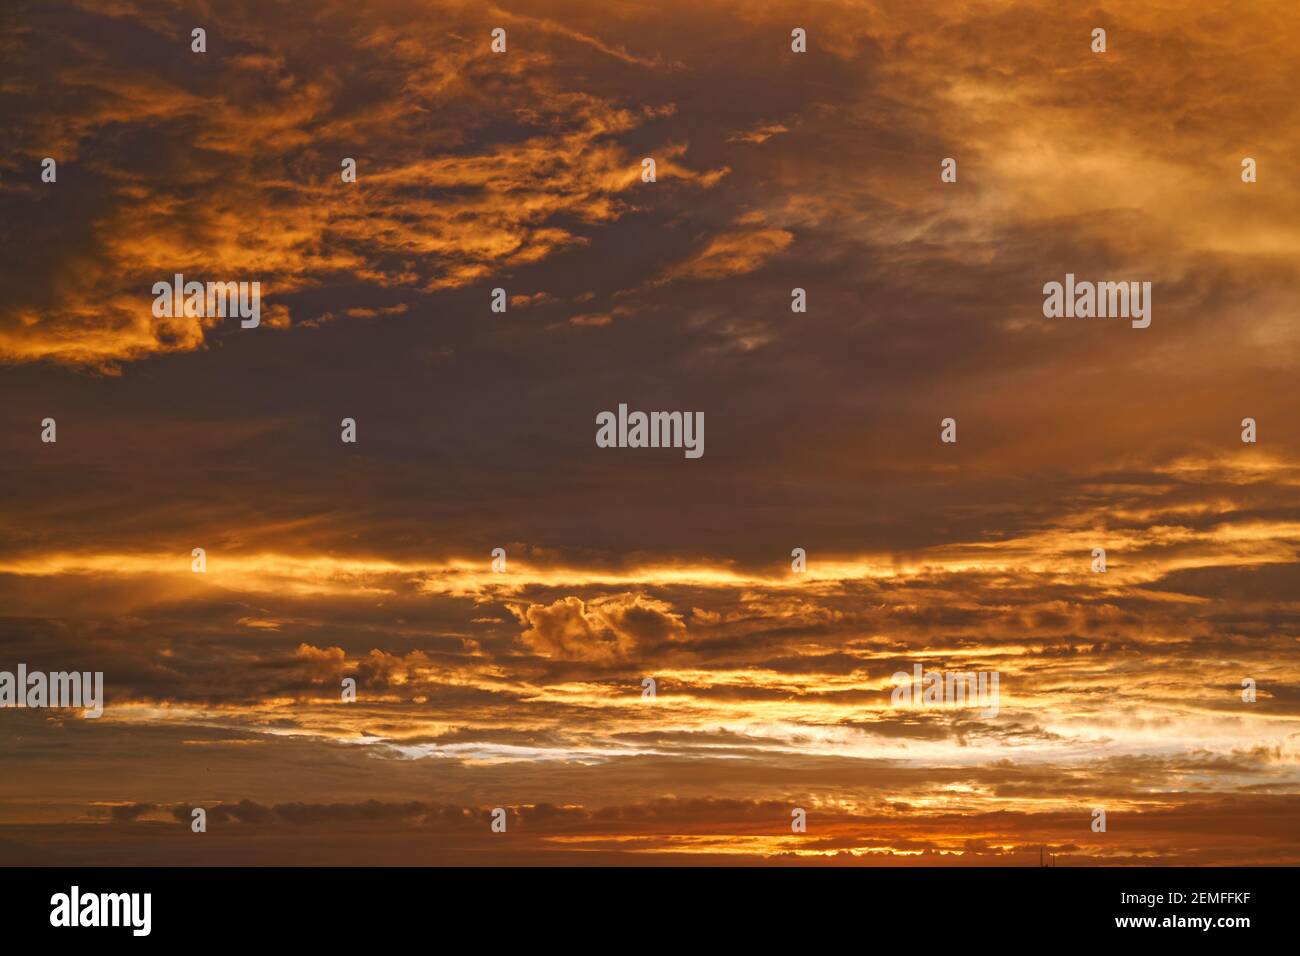 Ciel doré : photo d'un beau lever de soleil, nuages spectaculaires et chauds sur le ciel ; photo couleur. Banque D'Images